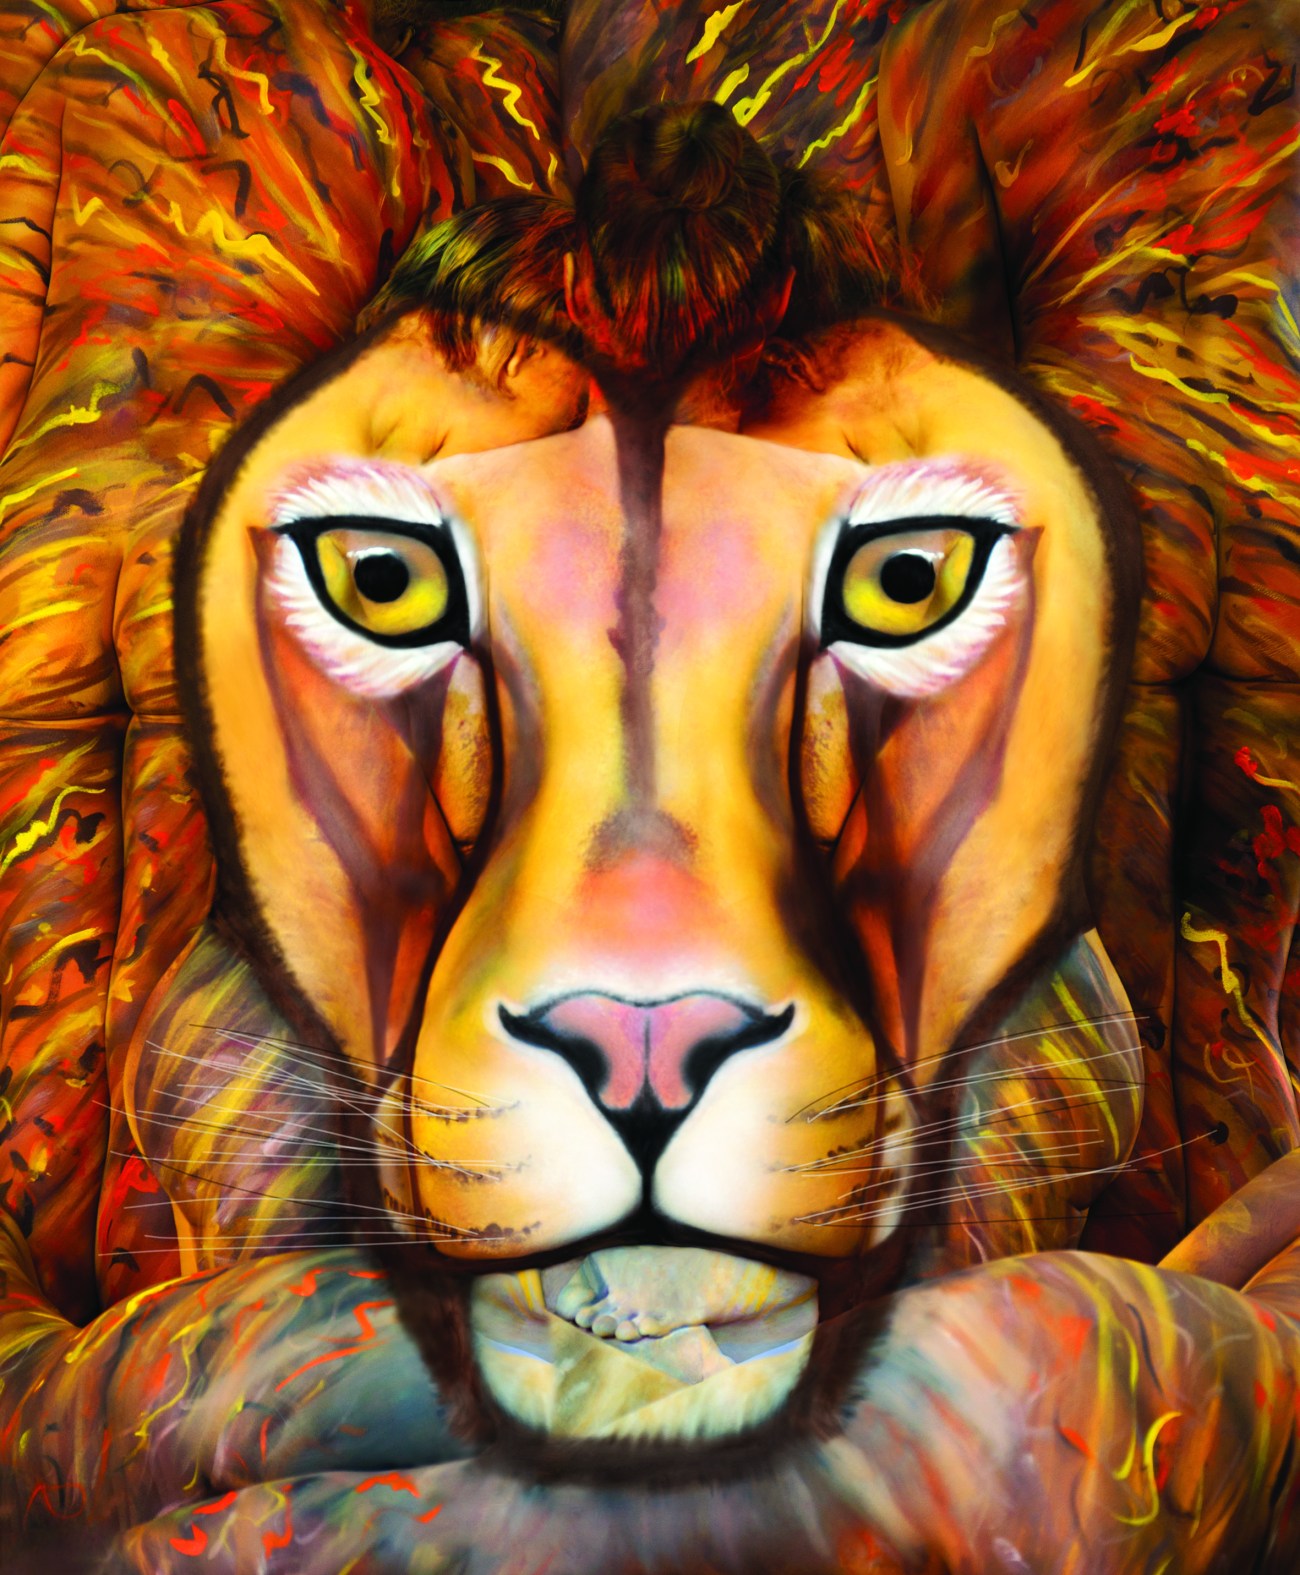 Le signe du lion, une peinture corporelle dont la réalisation a nécessité neuf corps en tout